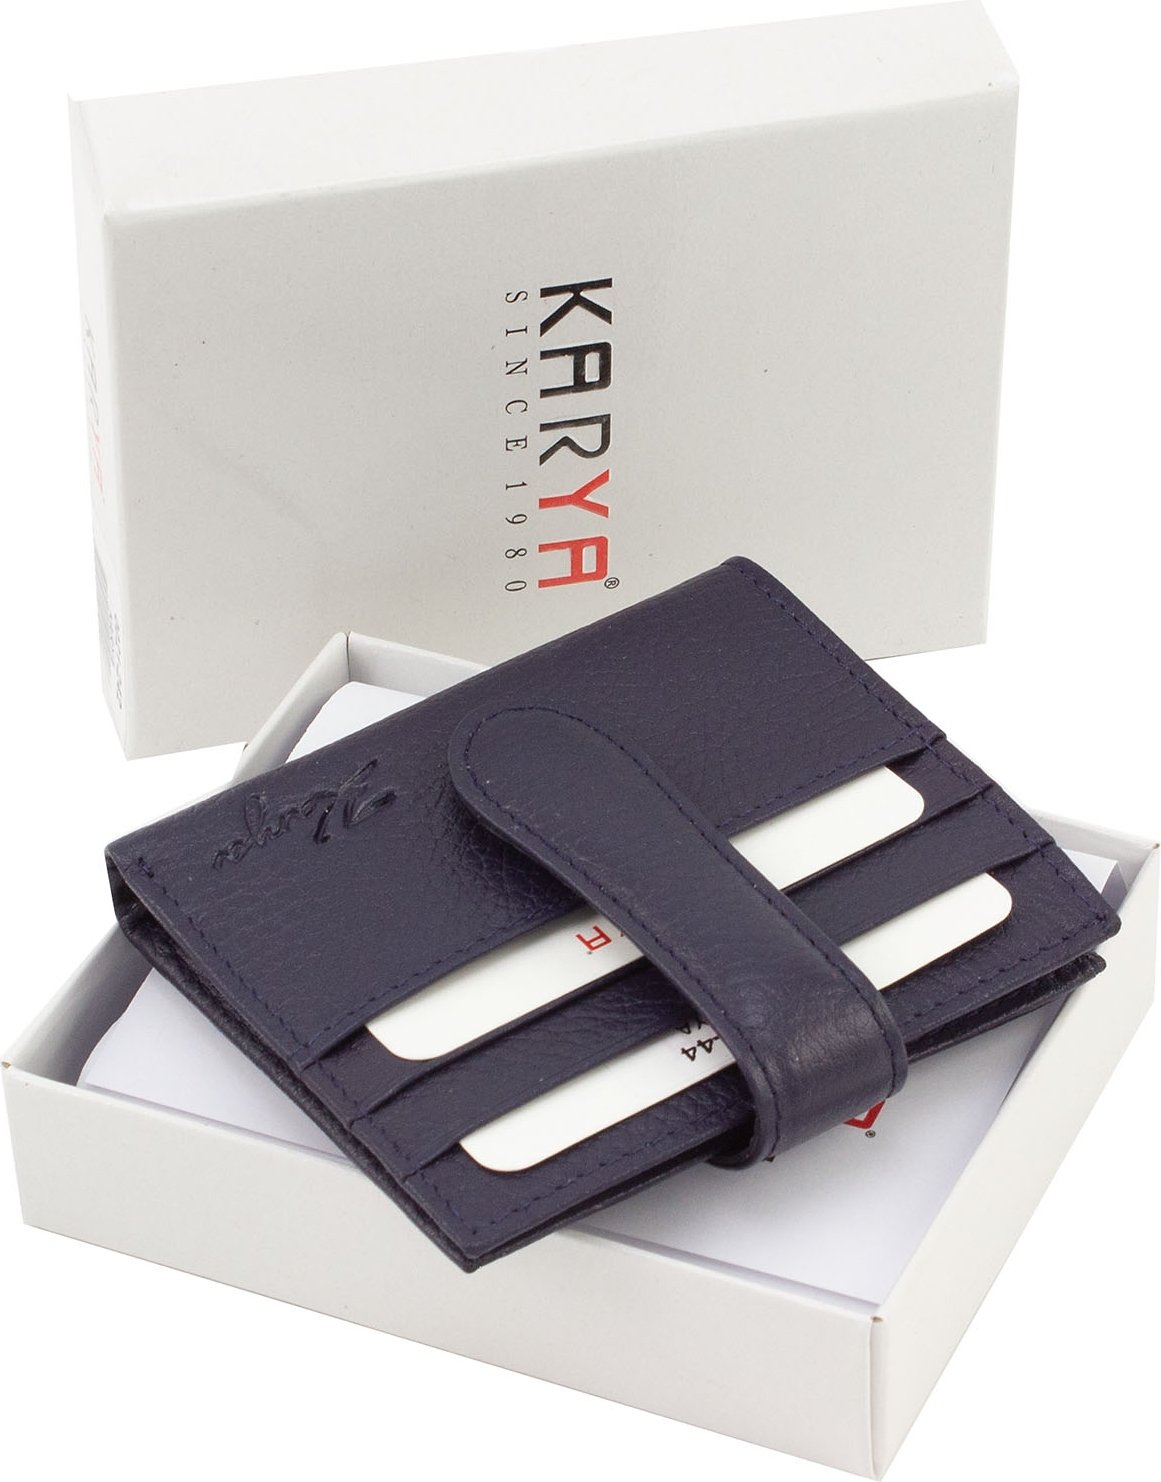 Темно-синий кожаный кошелек с фиксацией на хлястик с кнопкой KARYA (21047)